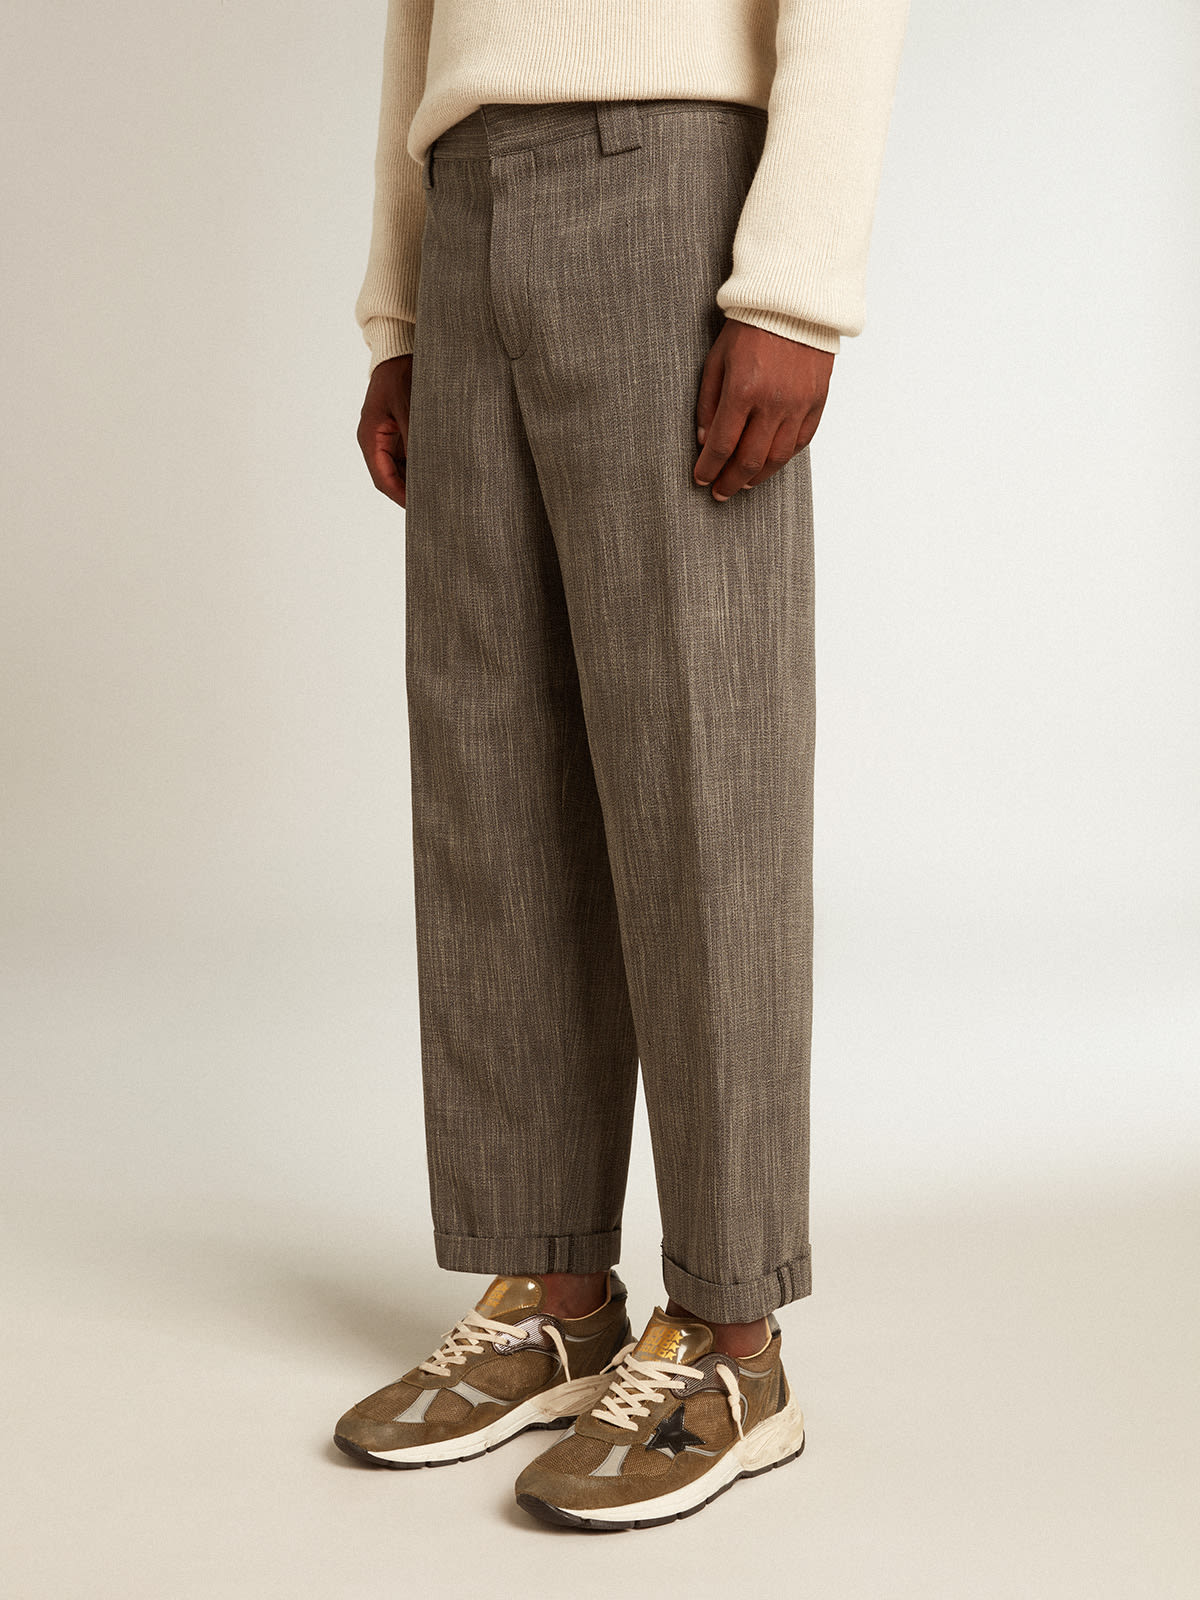 Golden Goose - Pantalón chino de hombre en mezcla de lana jaspeada color gris in 